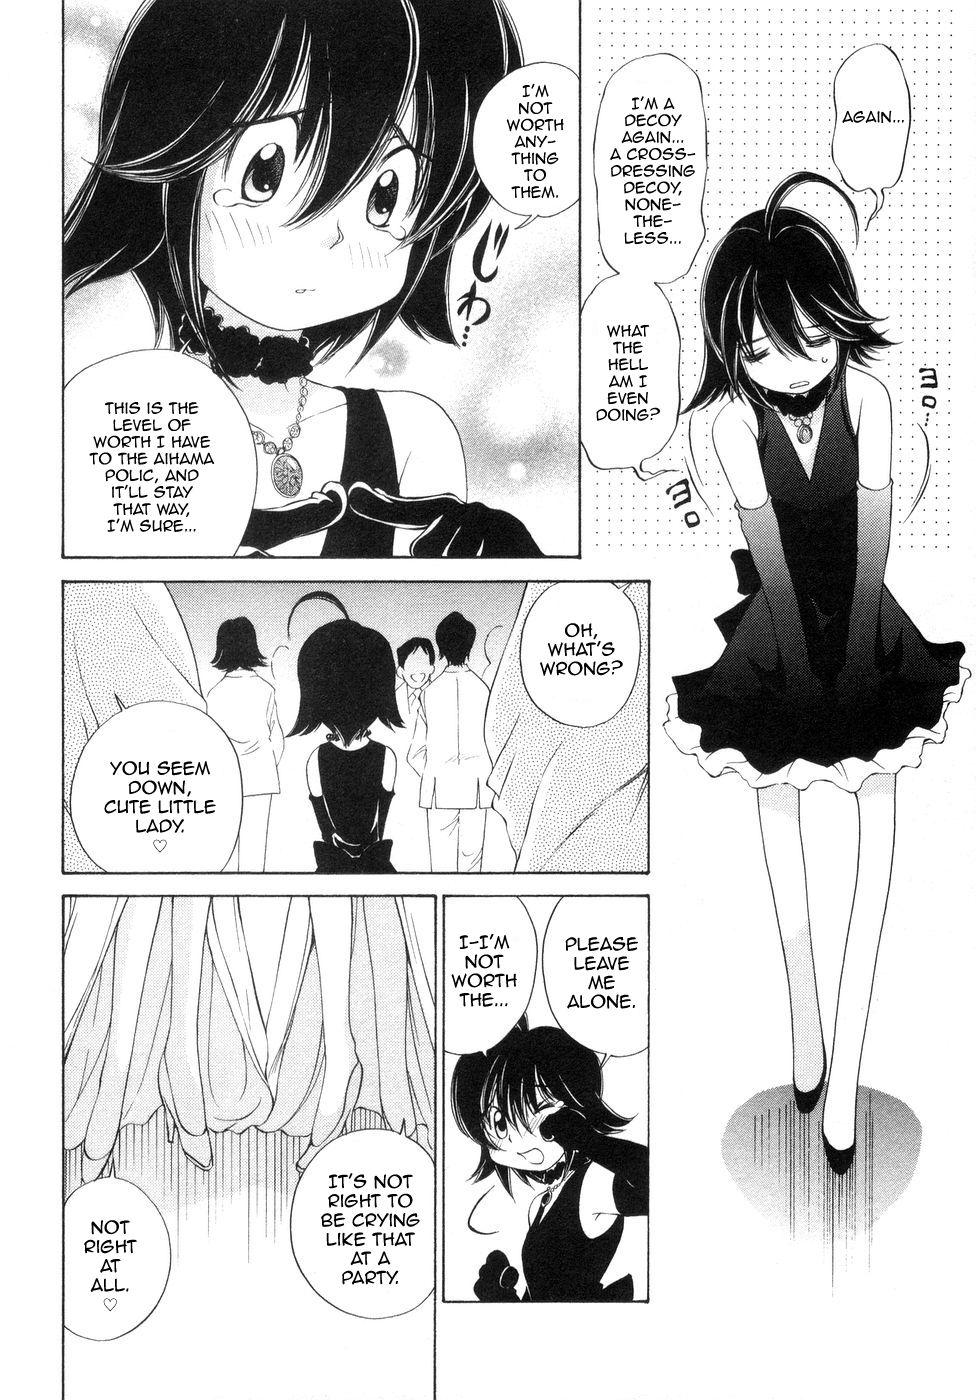 Girls Fucking Iketeru Police Volume 9, Chapter 8 - Celeb Shimai no Gokuraku Clinic Rough Porn - Page 10